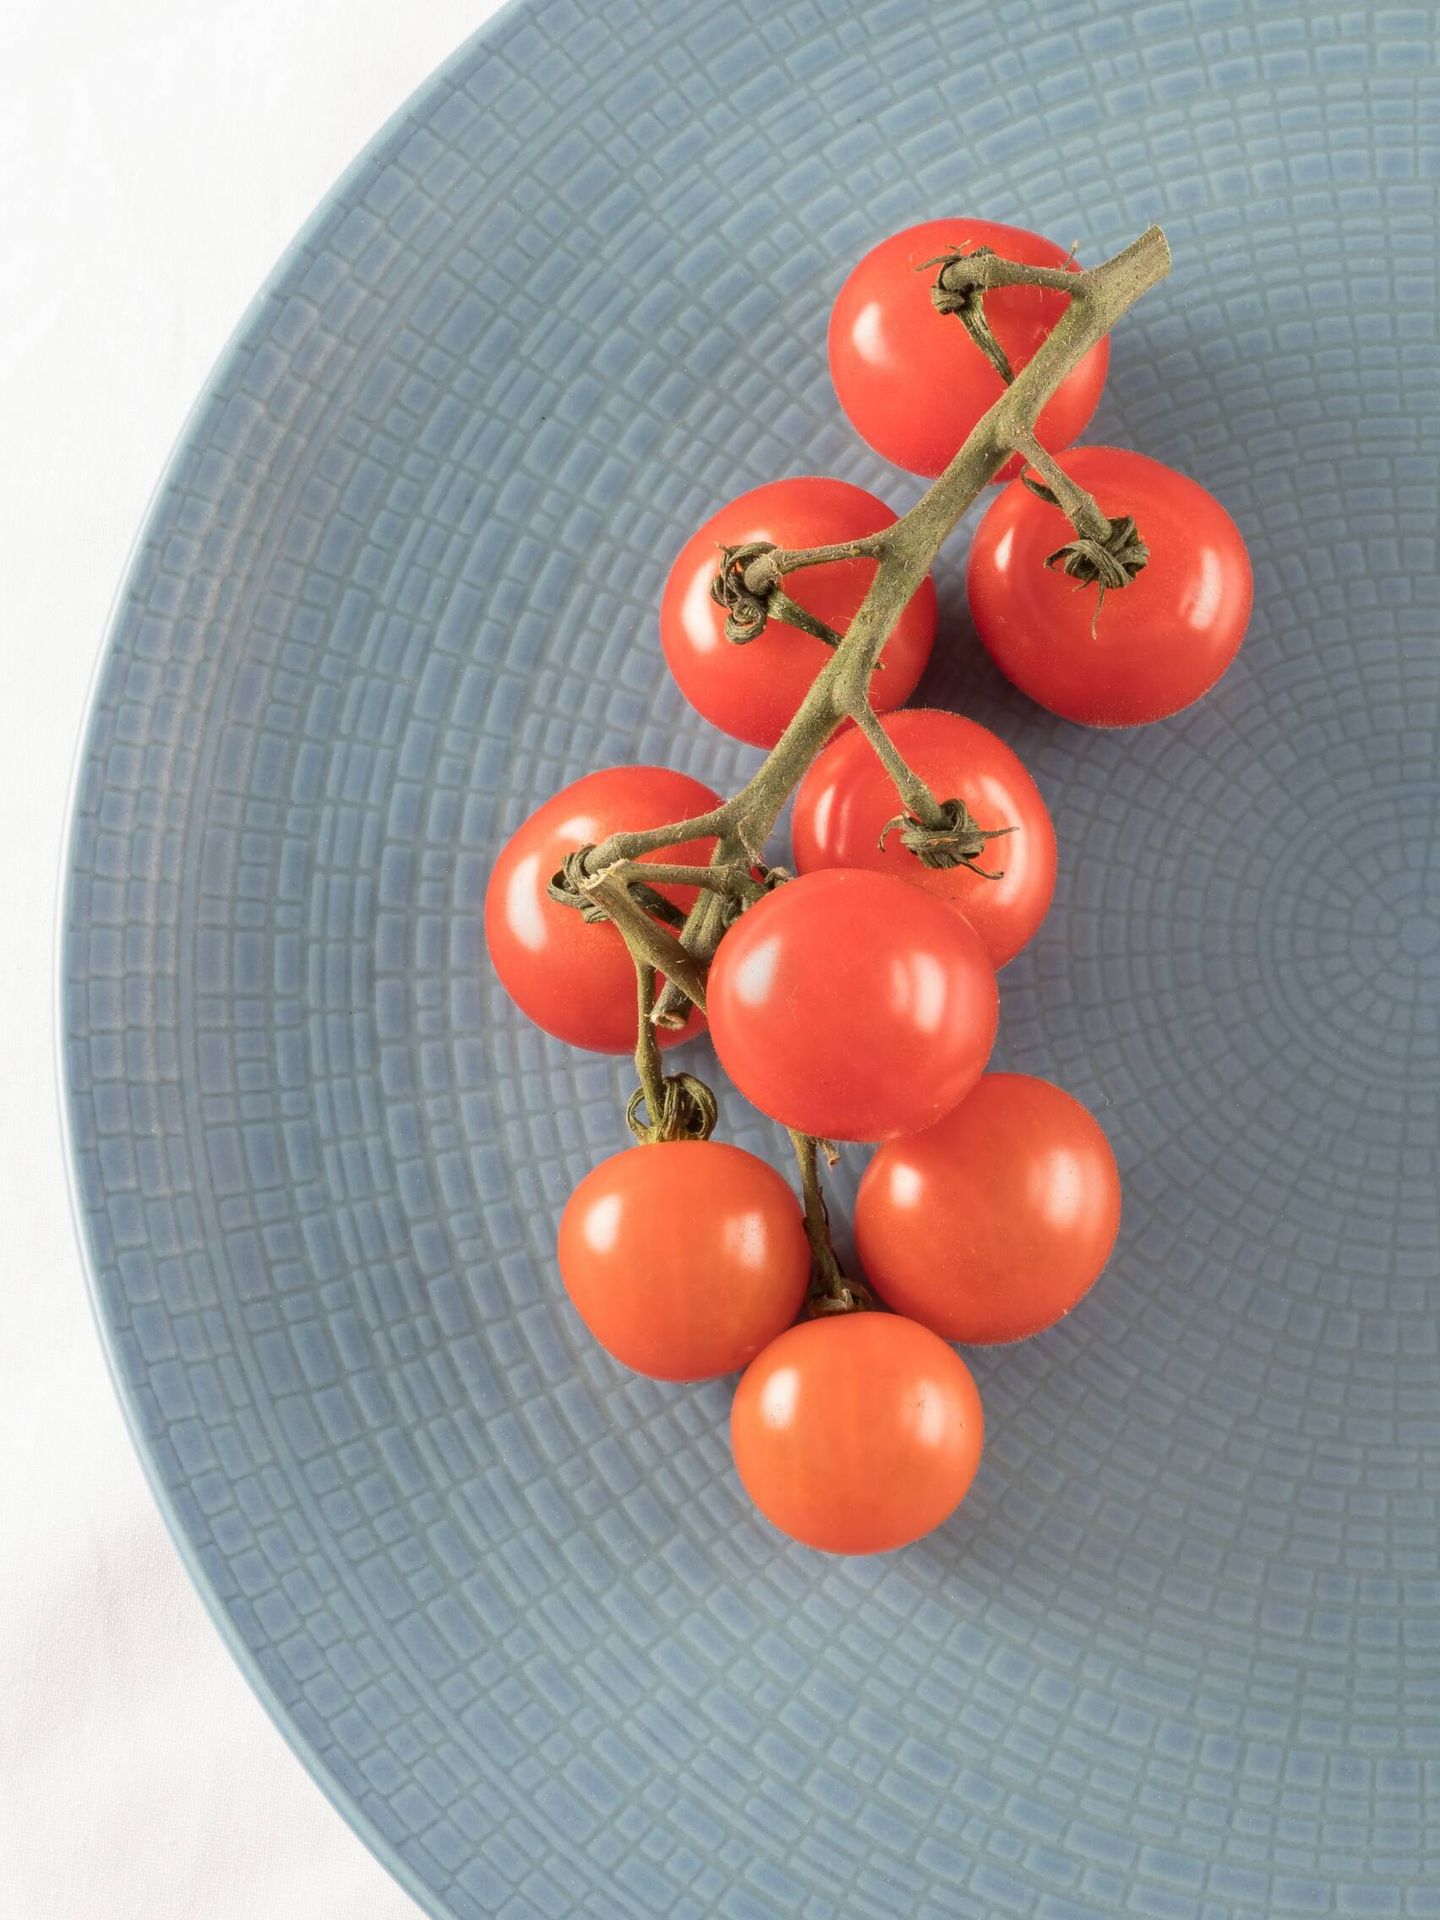 Receta saludable de tomate, provolone y pesto. (Helen Thomas para Unsplash)